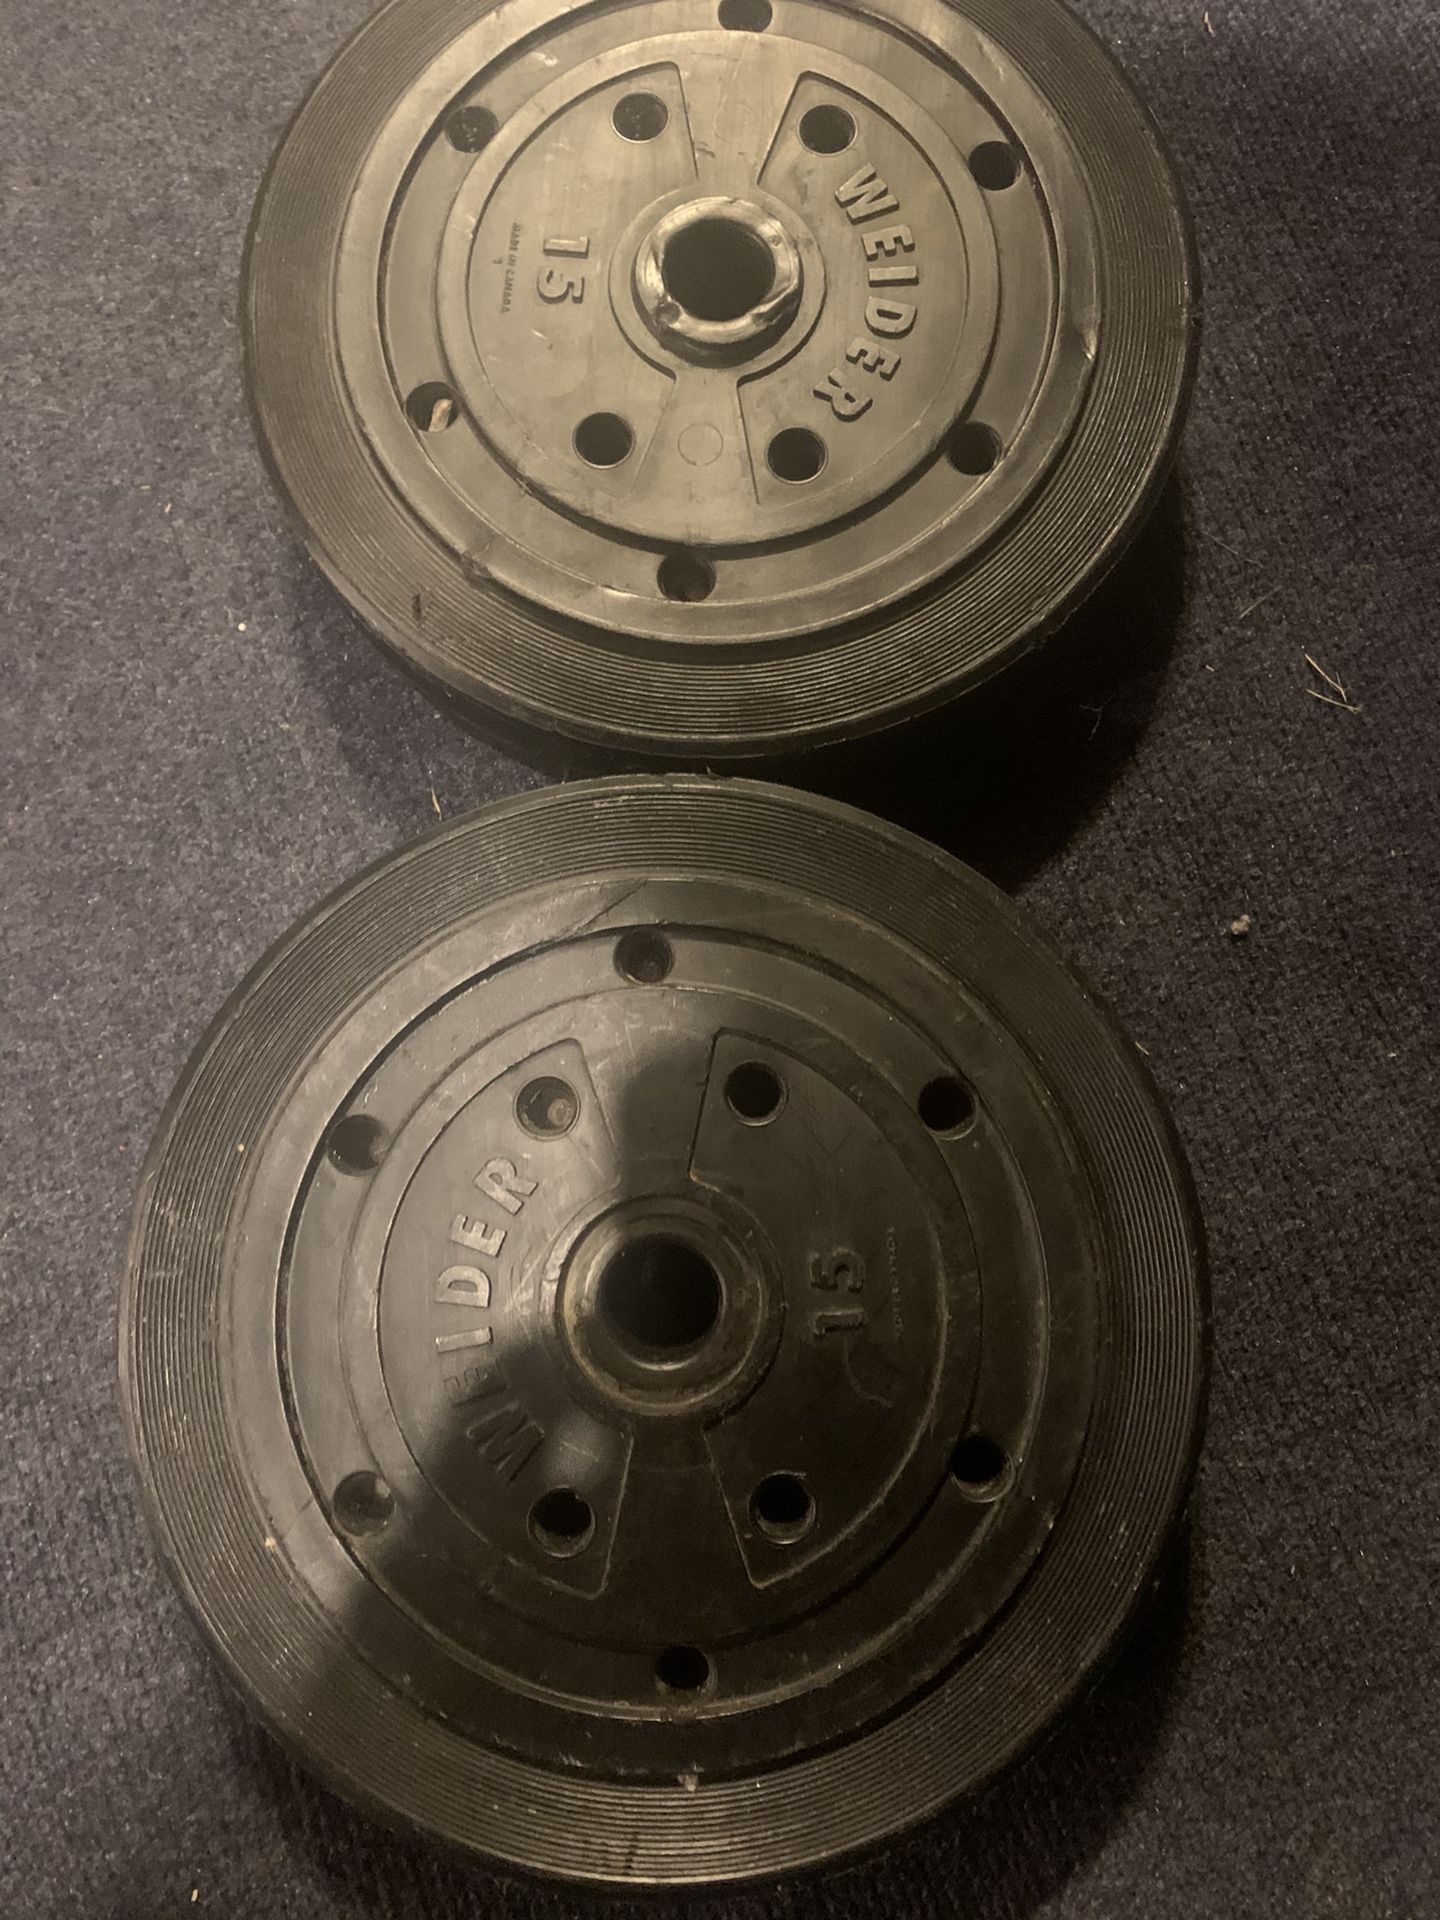 15lb standard weights